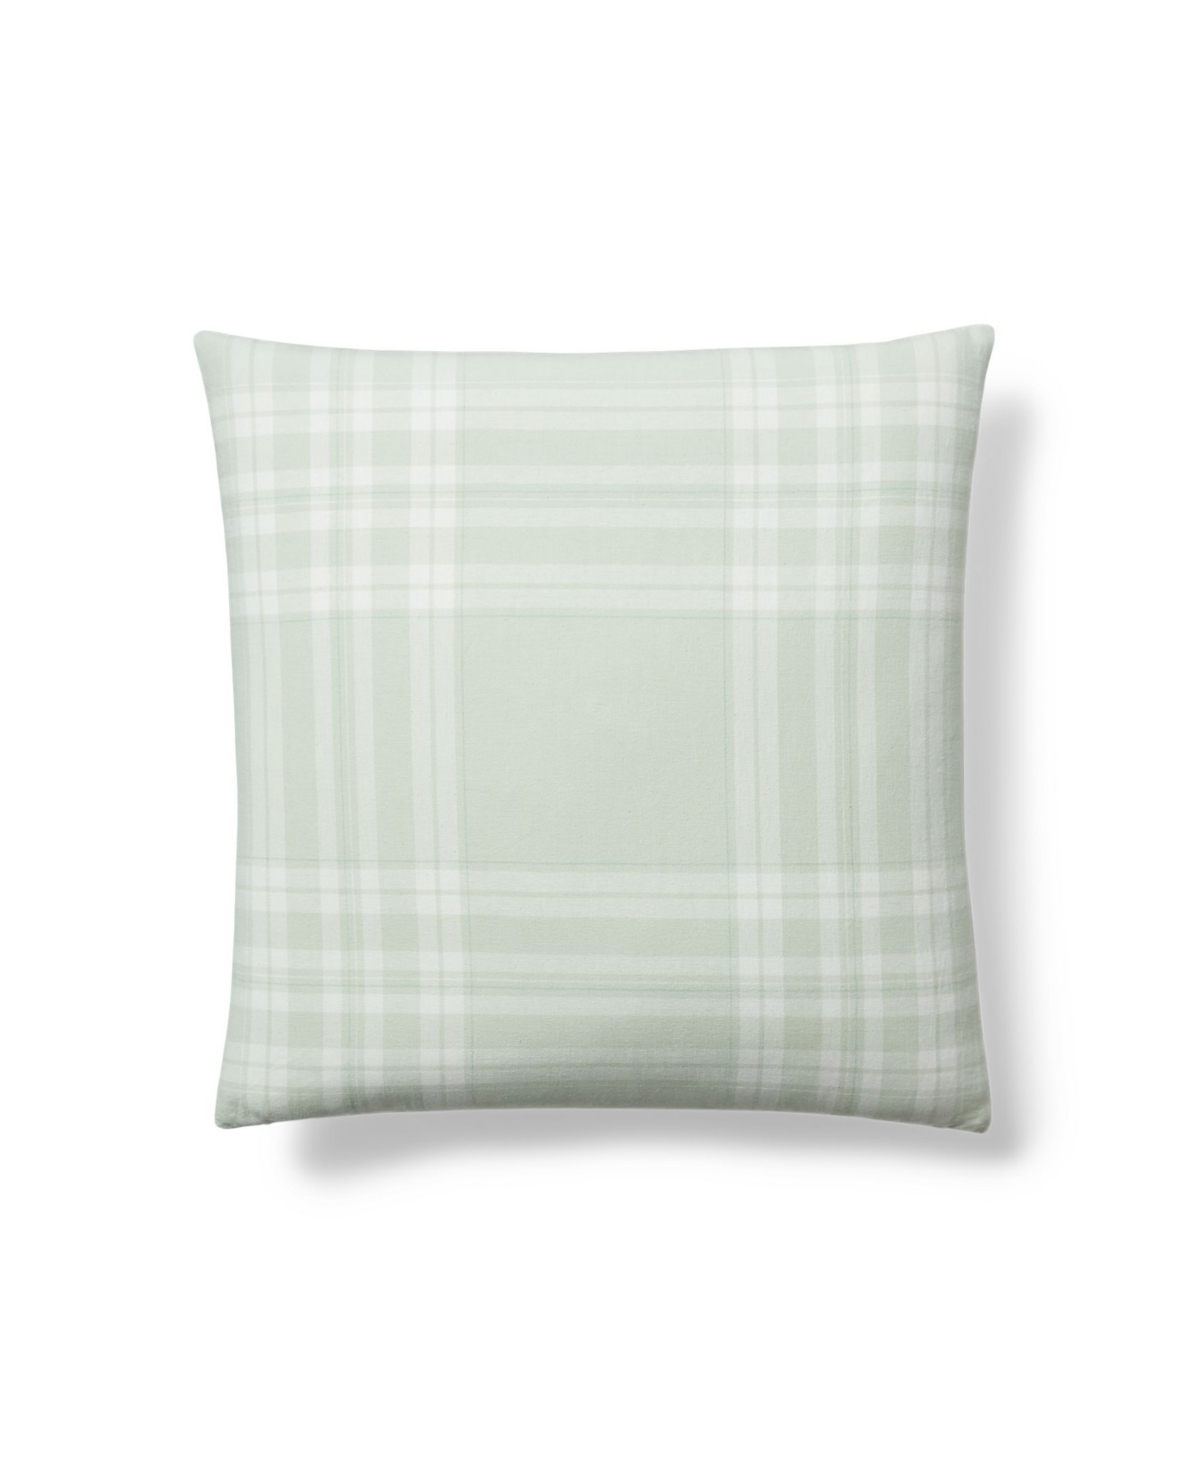 Lauren Ralph Lauren Windowpane Check Throw Pillow, 20" X 20" Bedding In Celadon